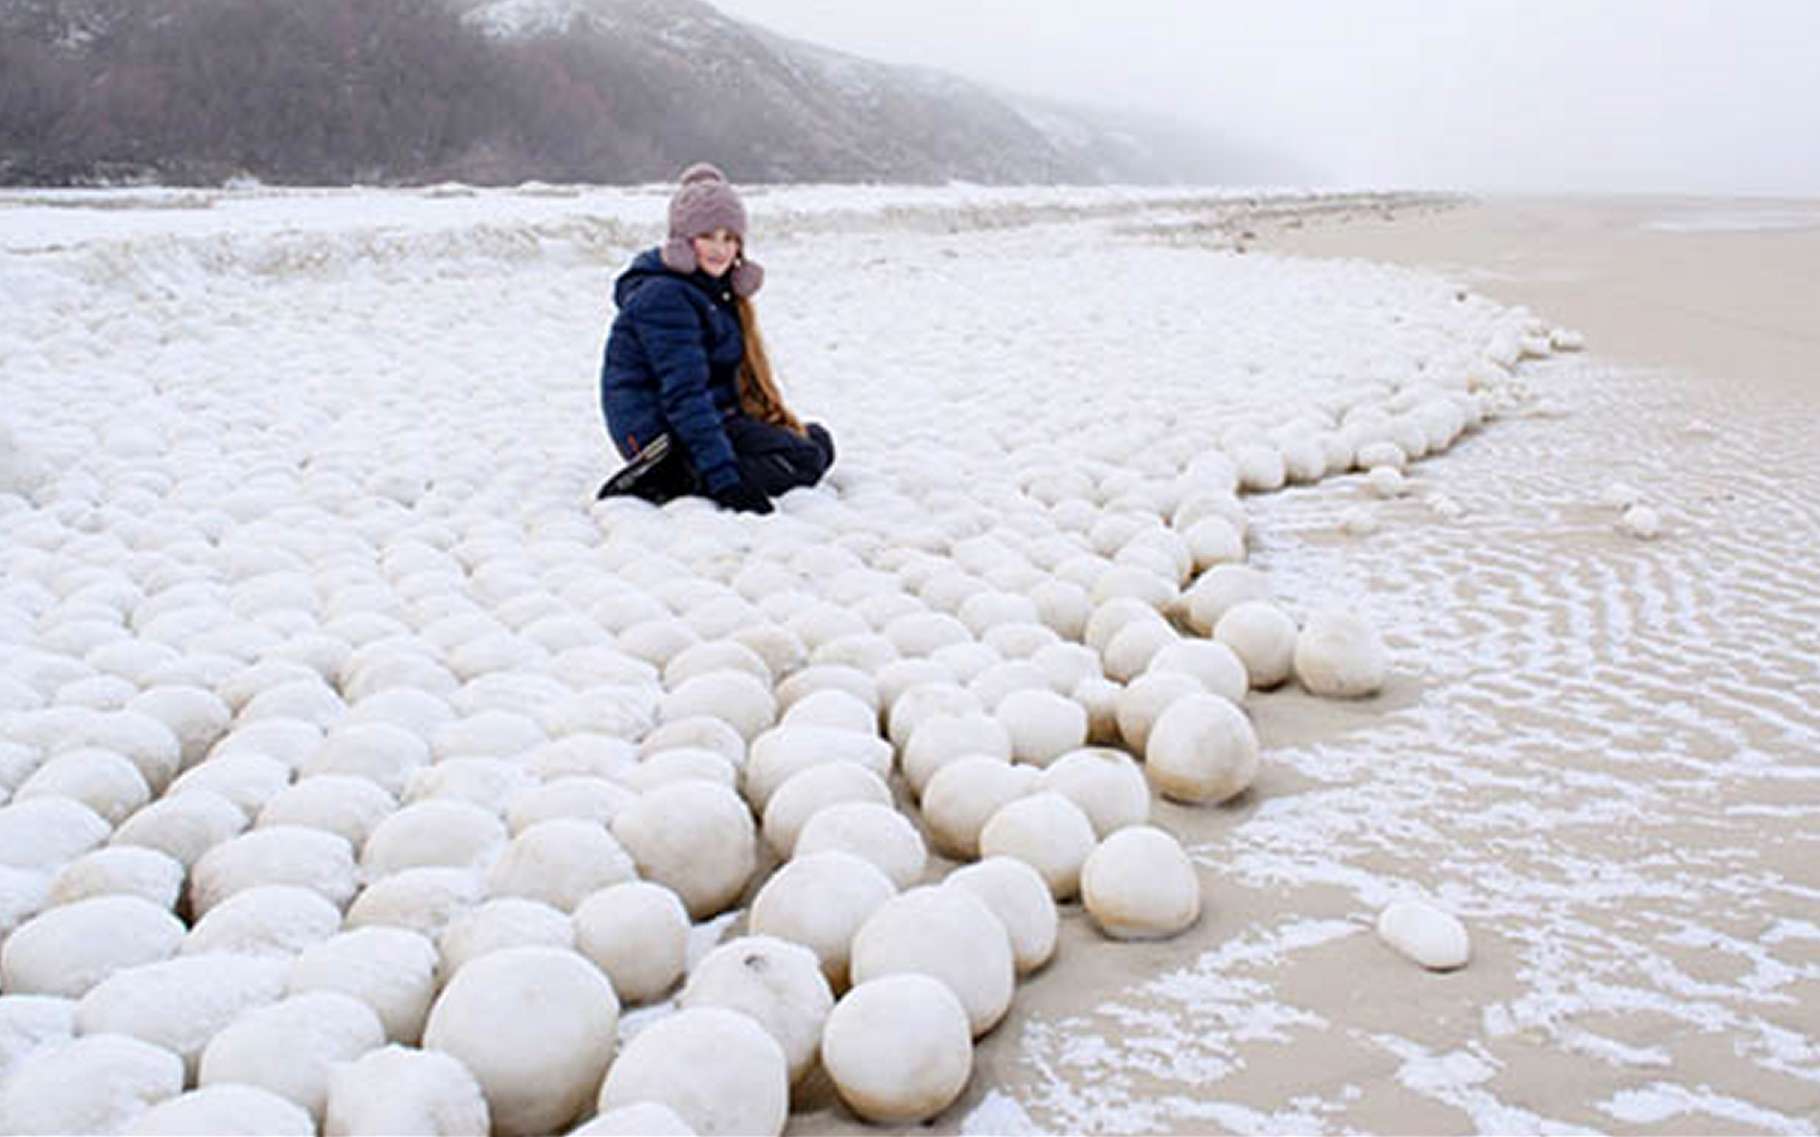 Des boules de neige géantes envahissent une plage en Sibérie. Pourquoi ?